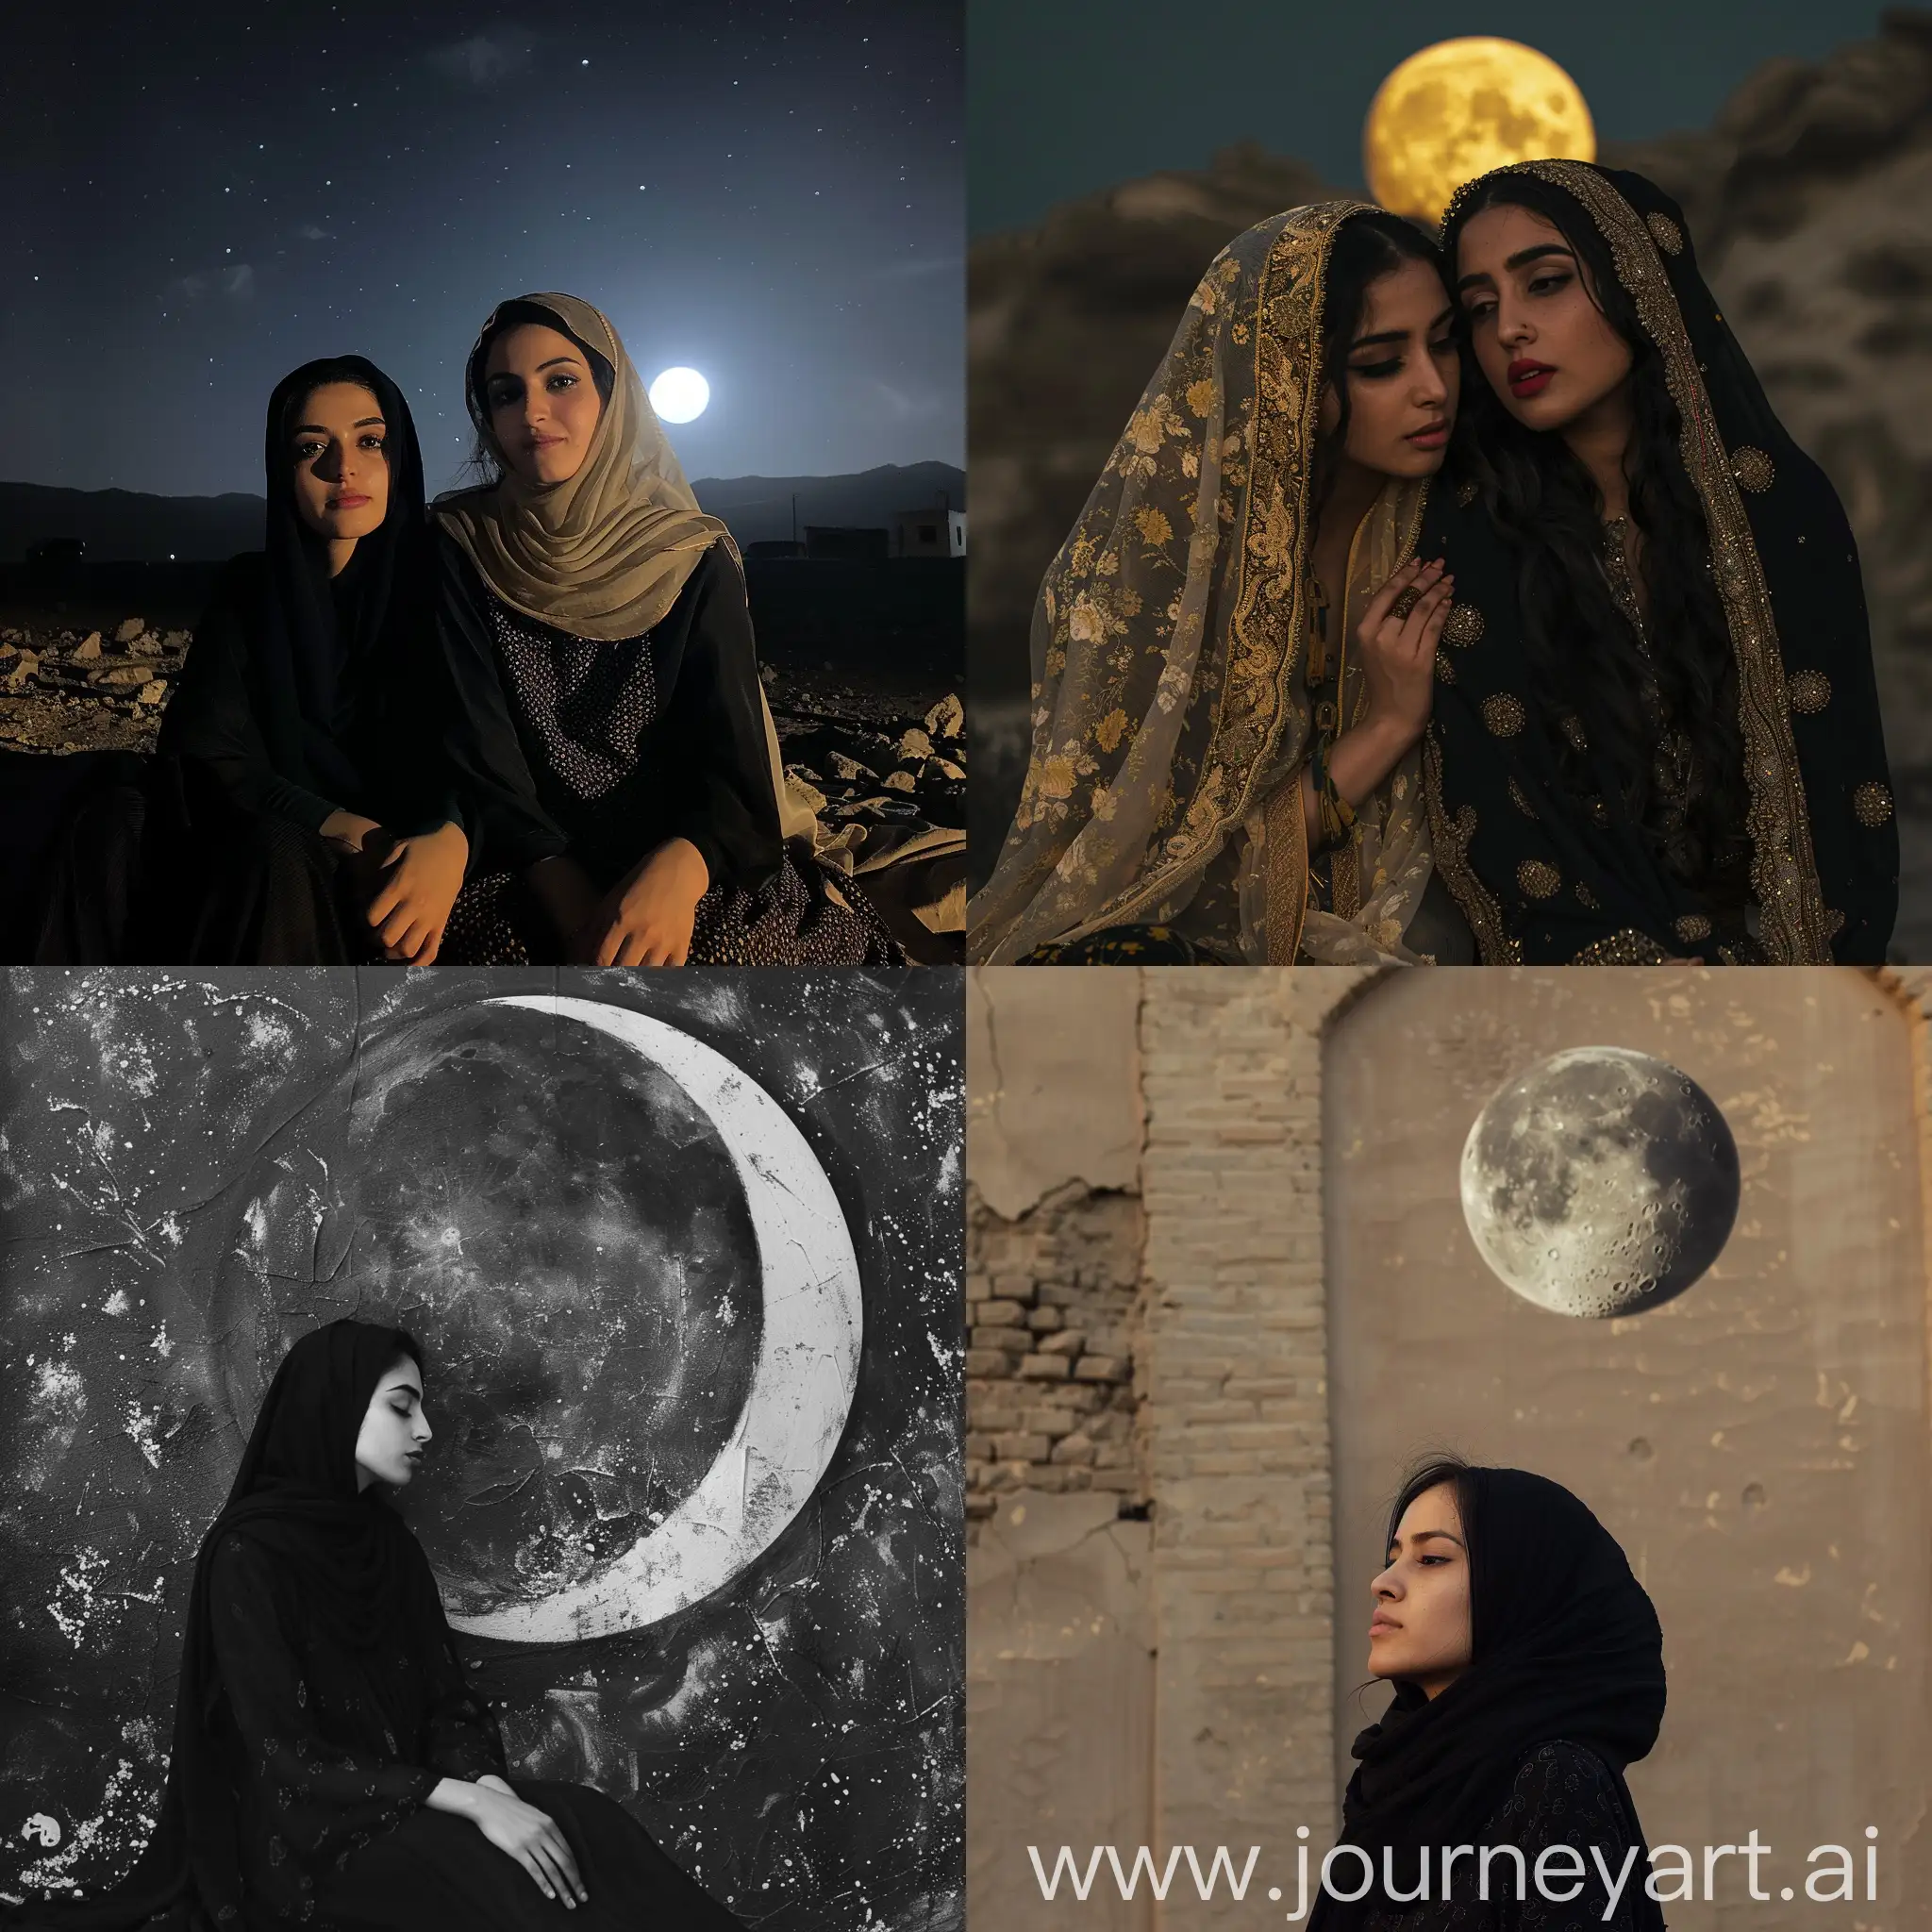 Reyhaneh and moon
